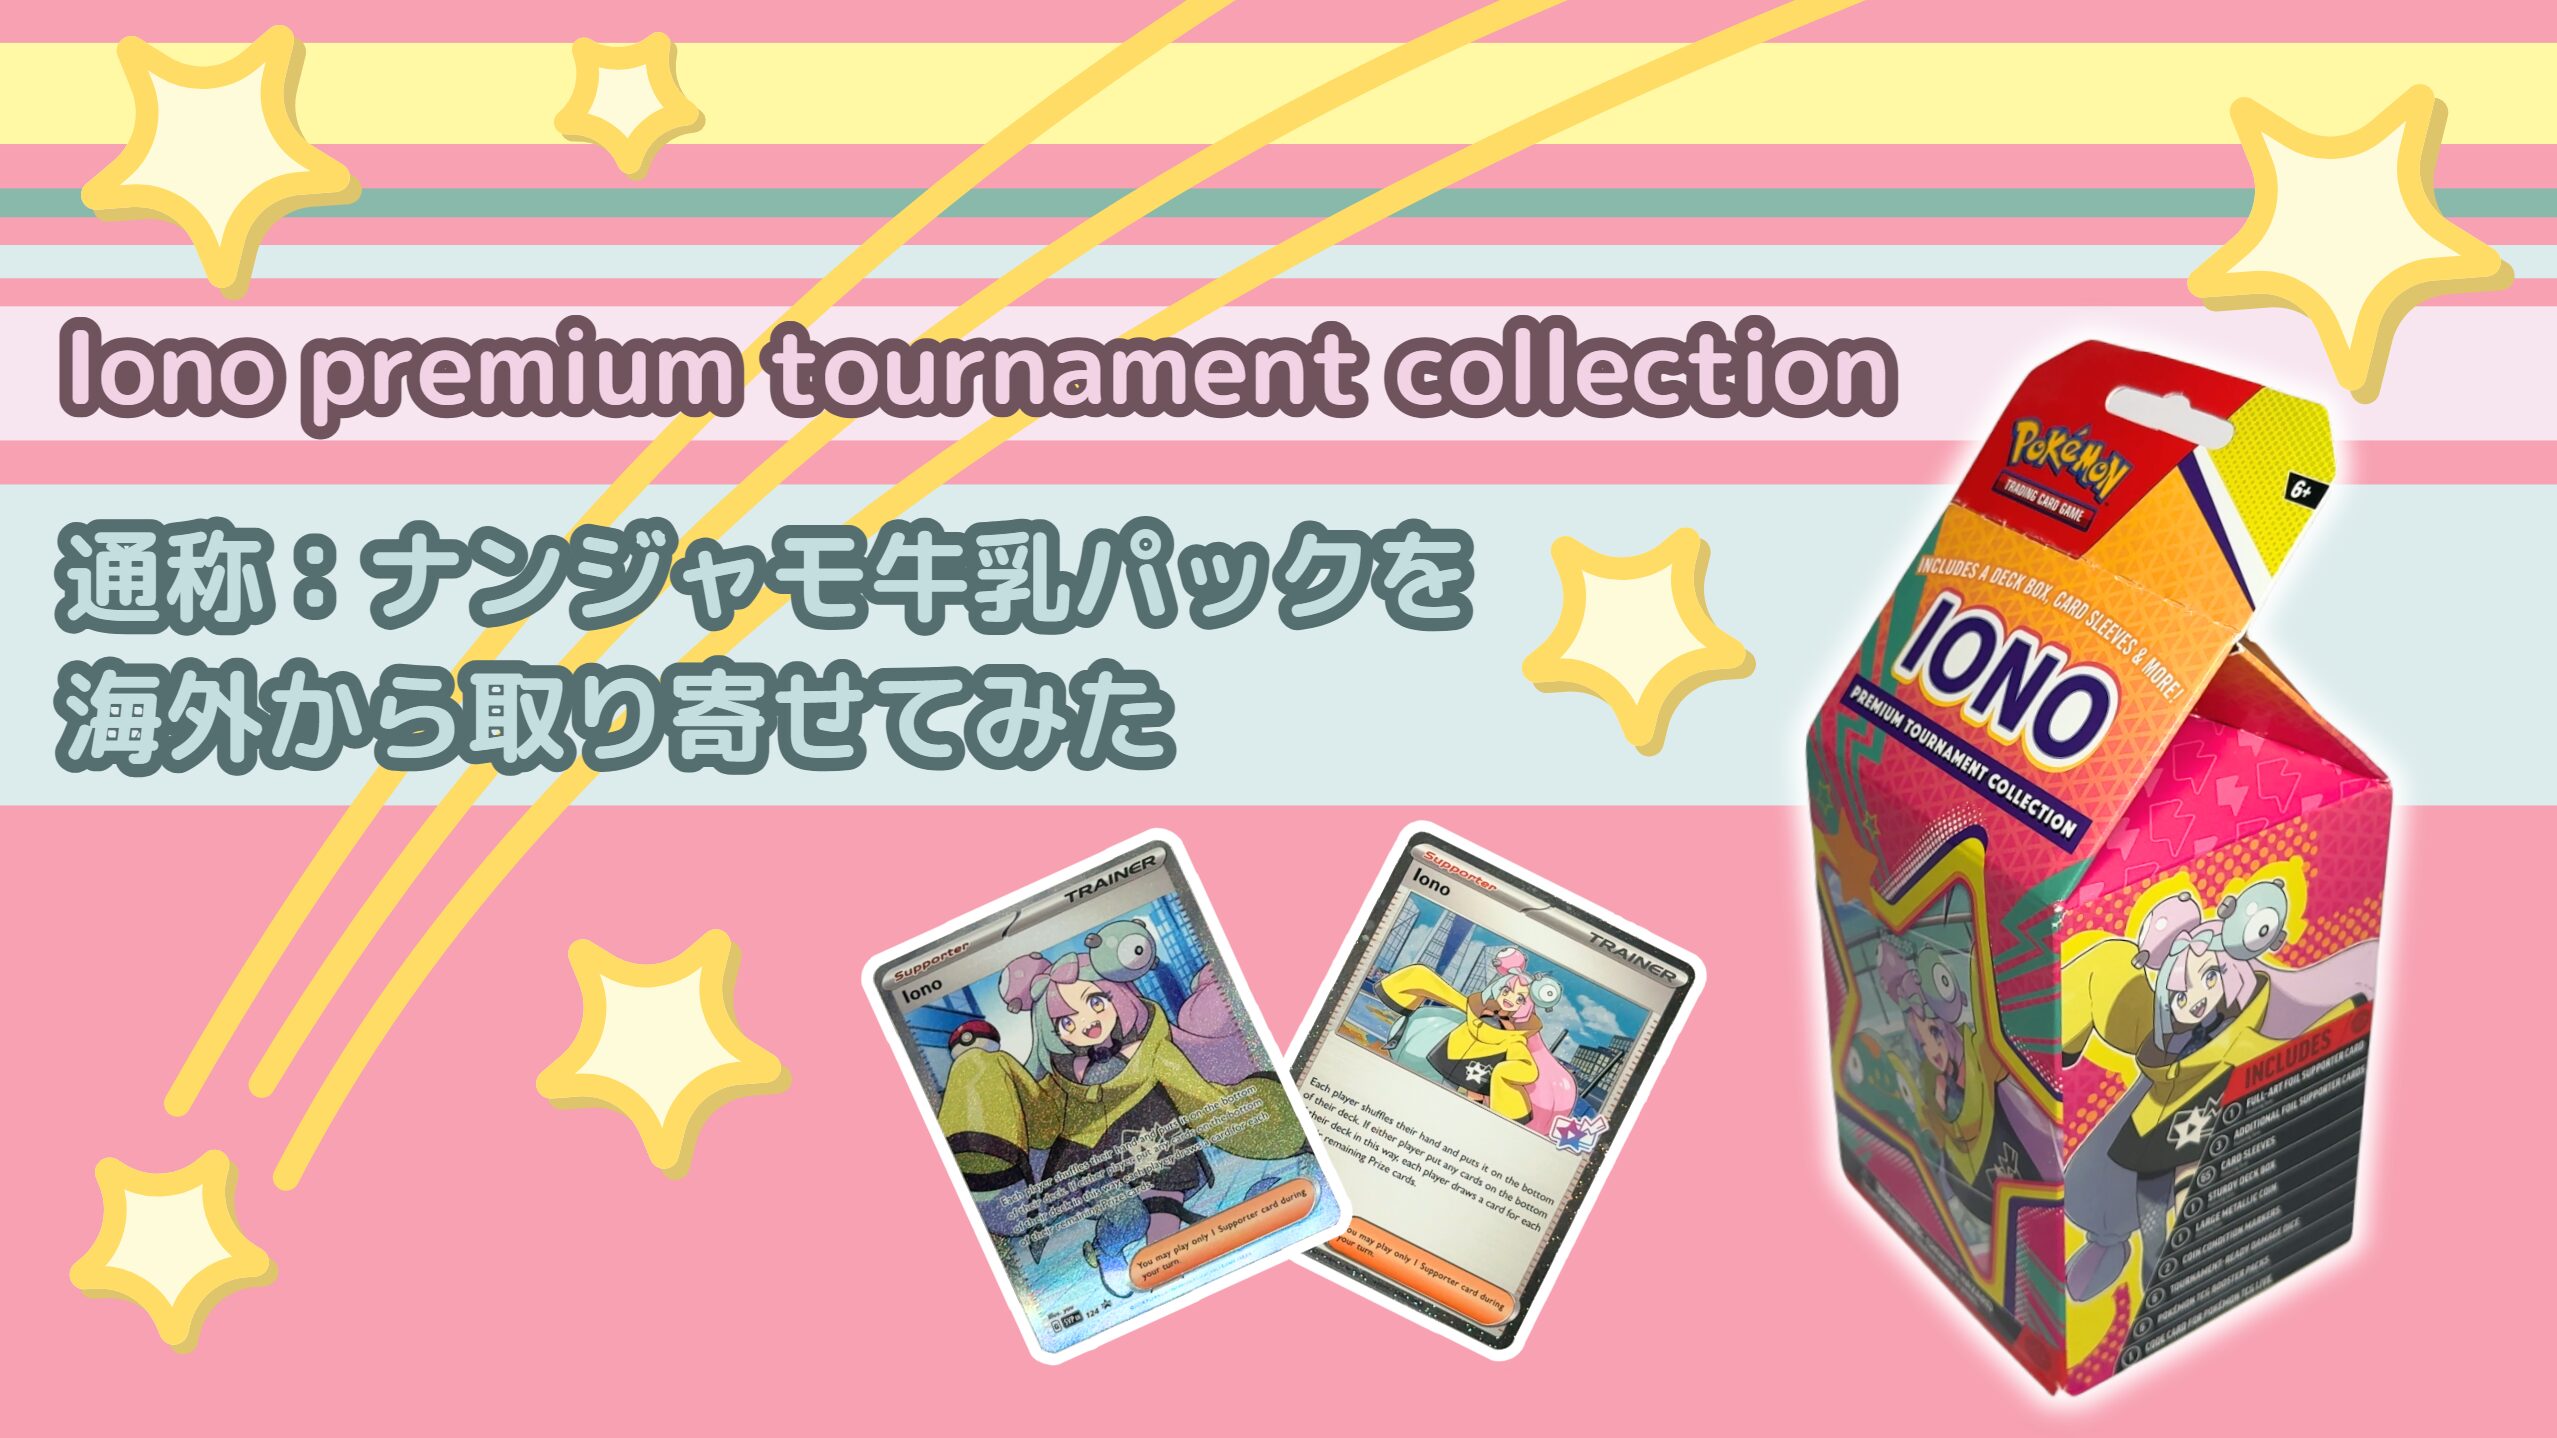 ぐうてるブログ | Iono premium tournament collection 通称 